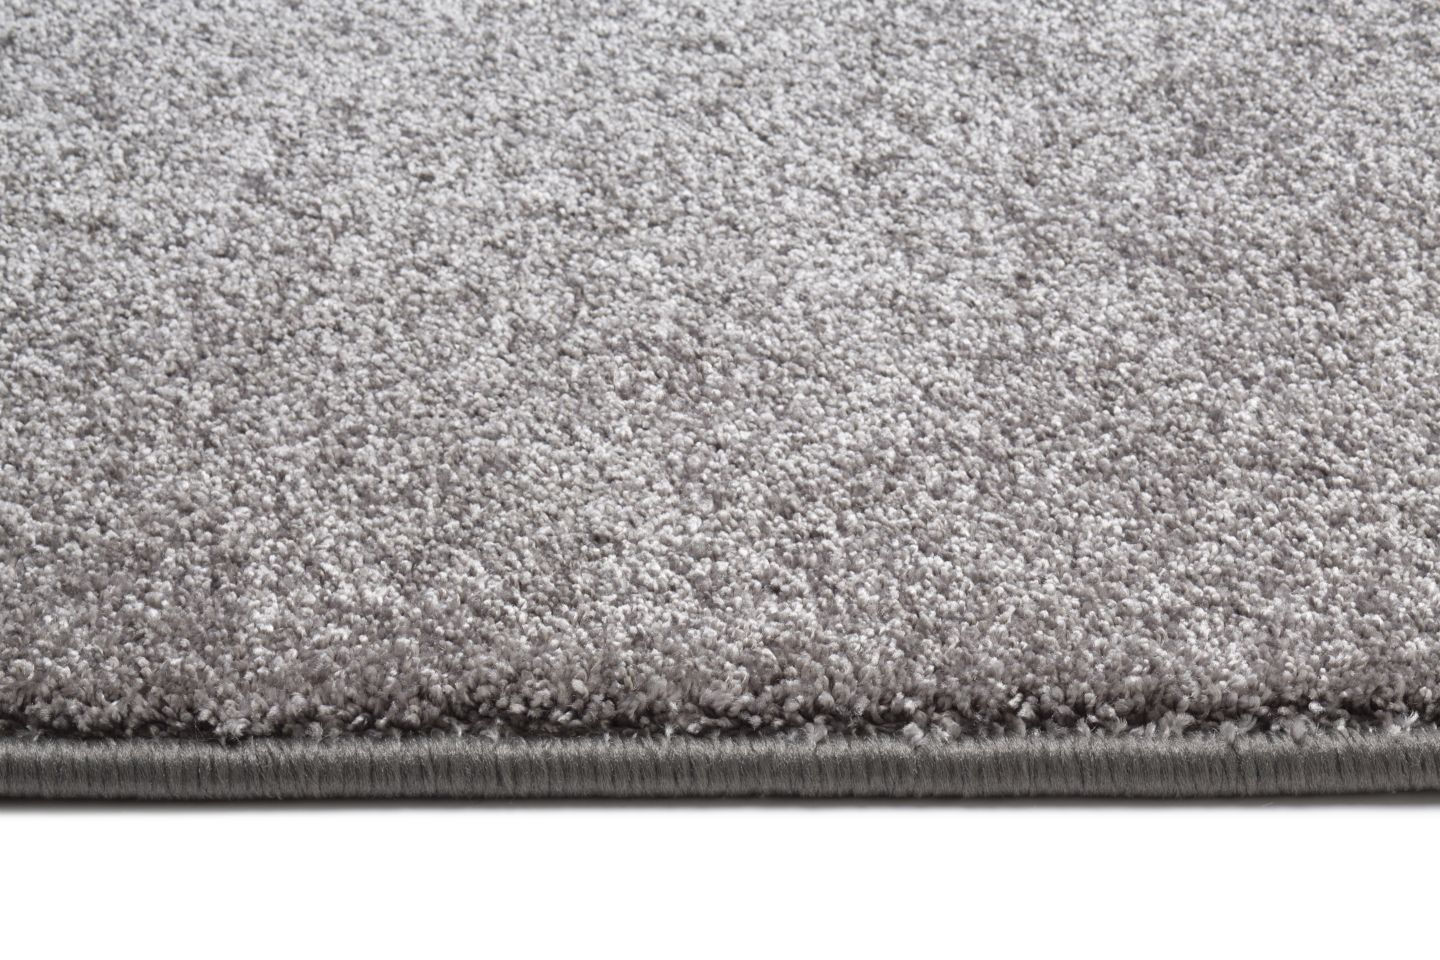 Metrážny koberec ROYALE sivý